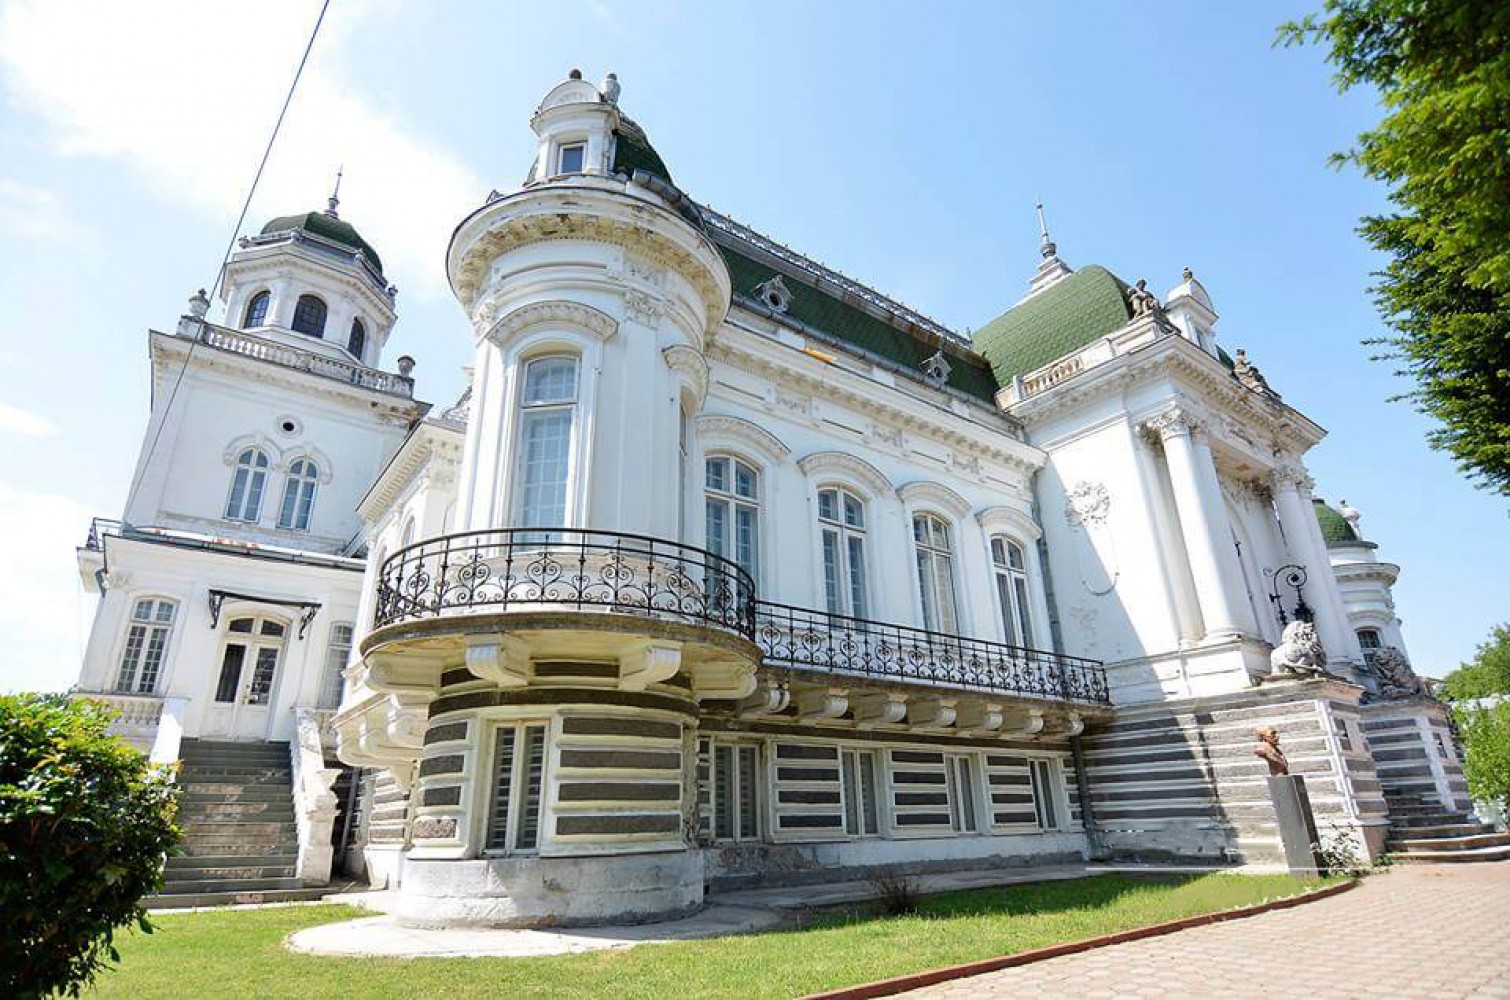 Obiective turistice în Dolj. Palatul Marincu